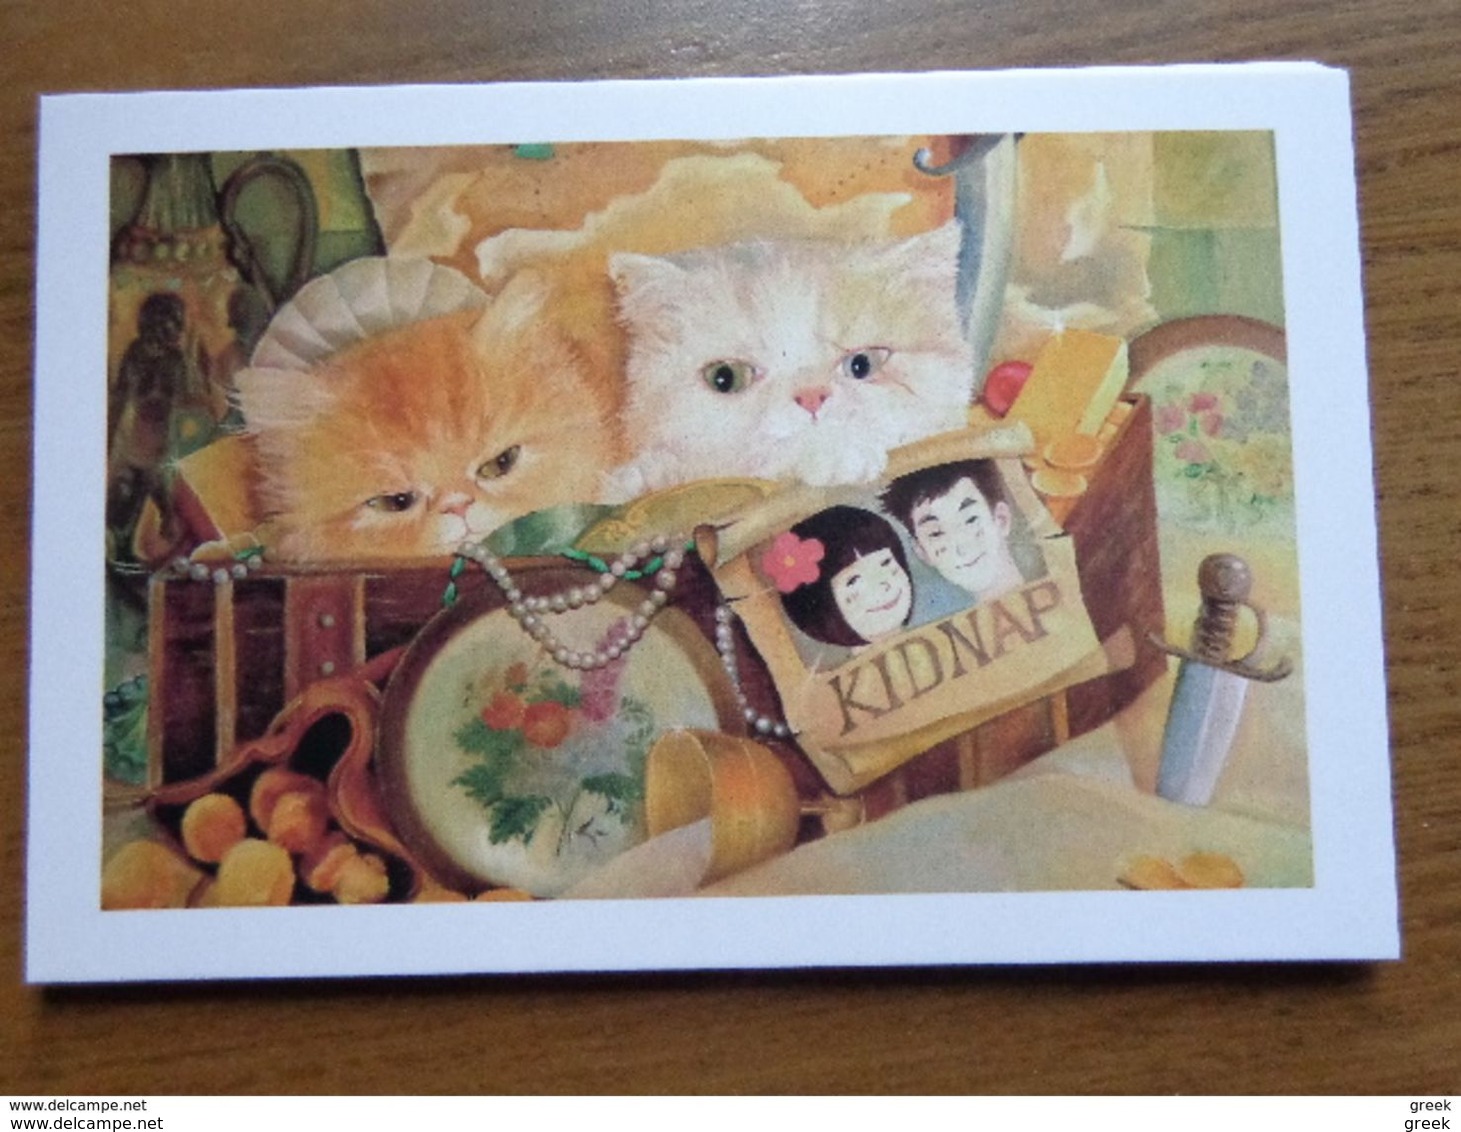 12 cards with Funny Cats - 12 leuke poezenkaarten (onbeschreven, unwritten, see pictures)